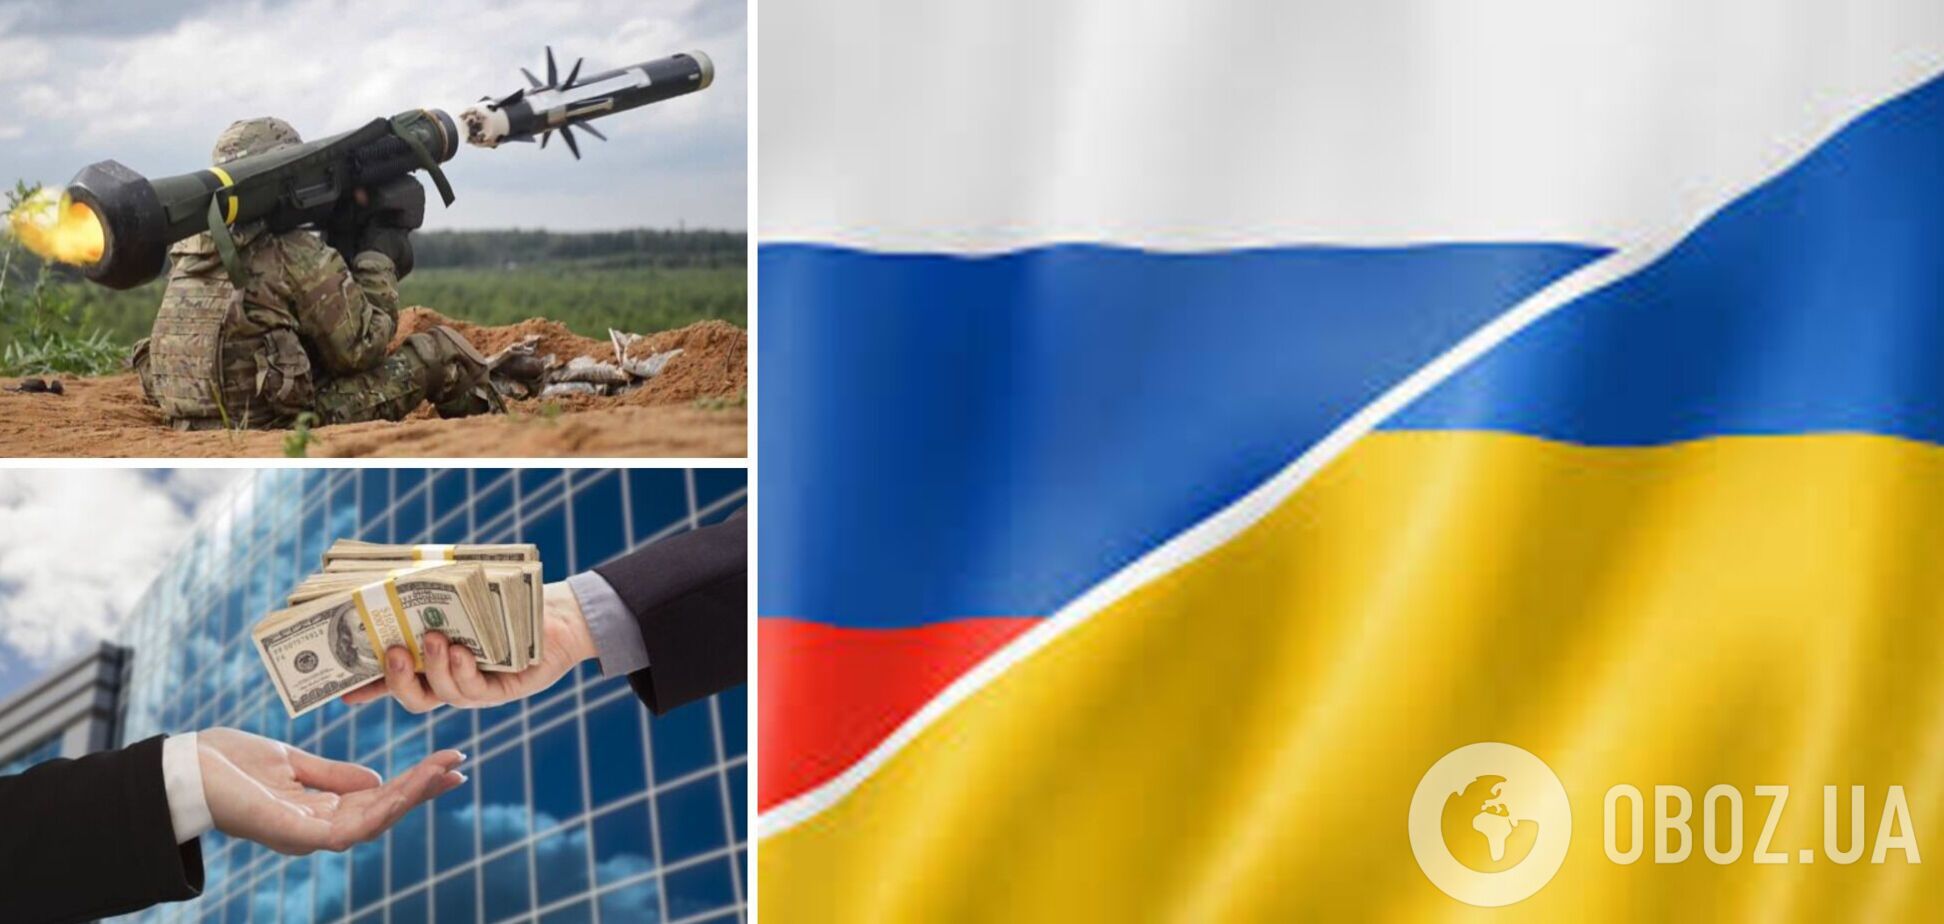 Международная коалиция в поддержку Украины: от денежной помощи до вооружения